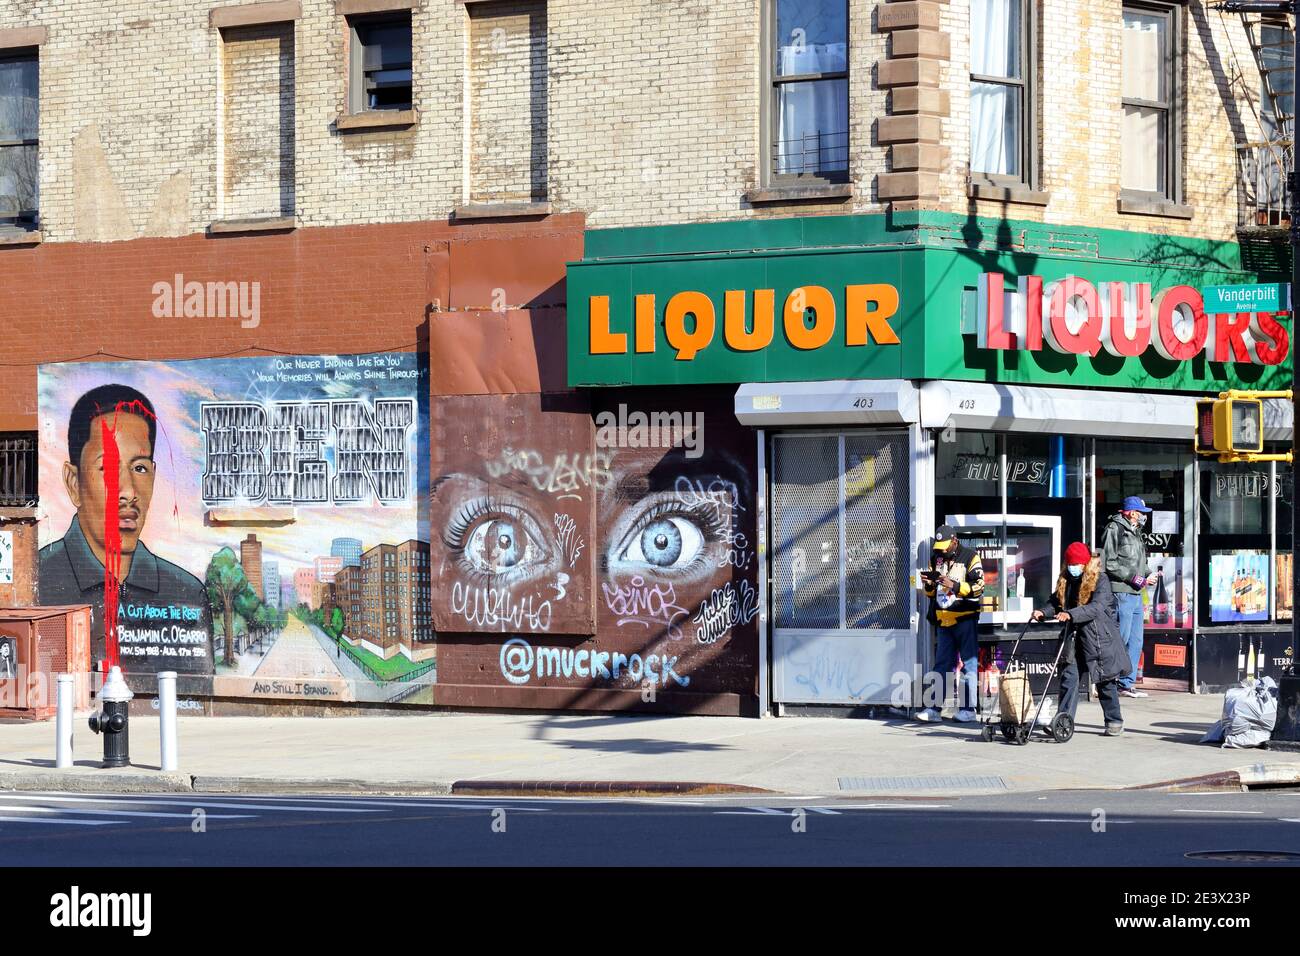 Un negozio di liquori, un murale memoriale ad un trafficante di droga ucciso, e la gente all'angolo di Myrtle e Vanderbilt Ave a Fort Greene/Clinton Hil Foto Stock